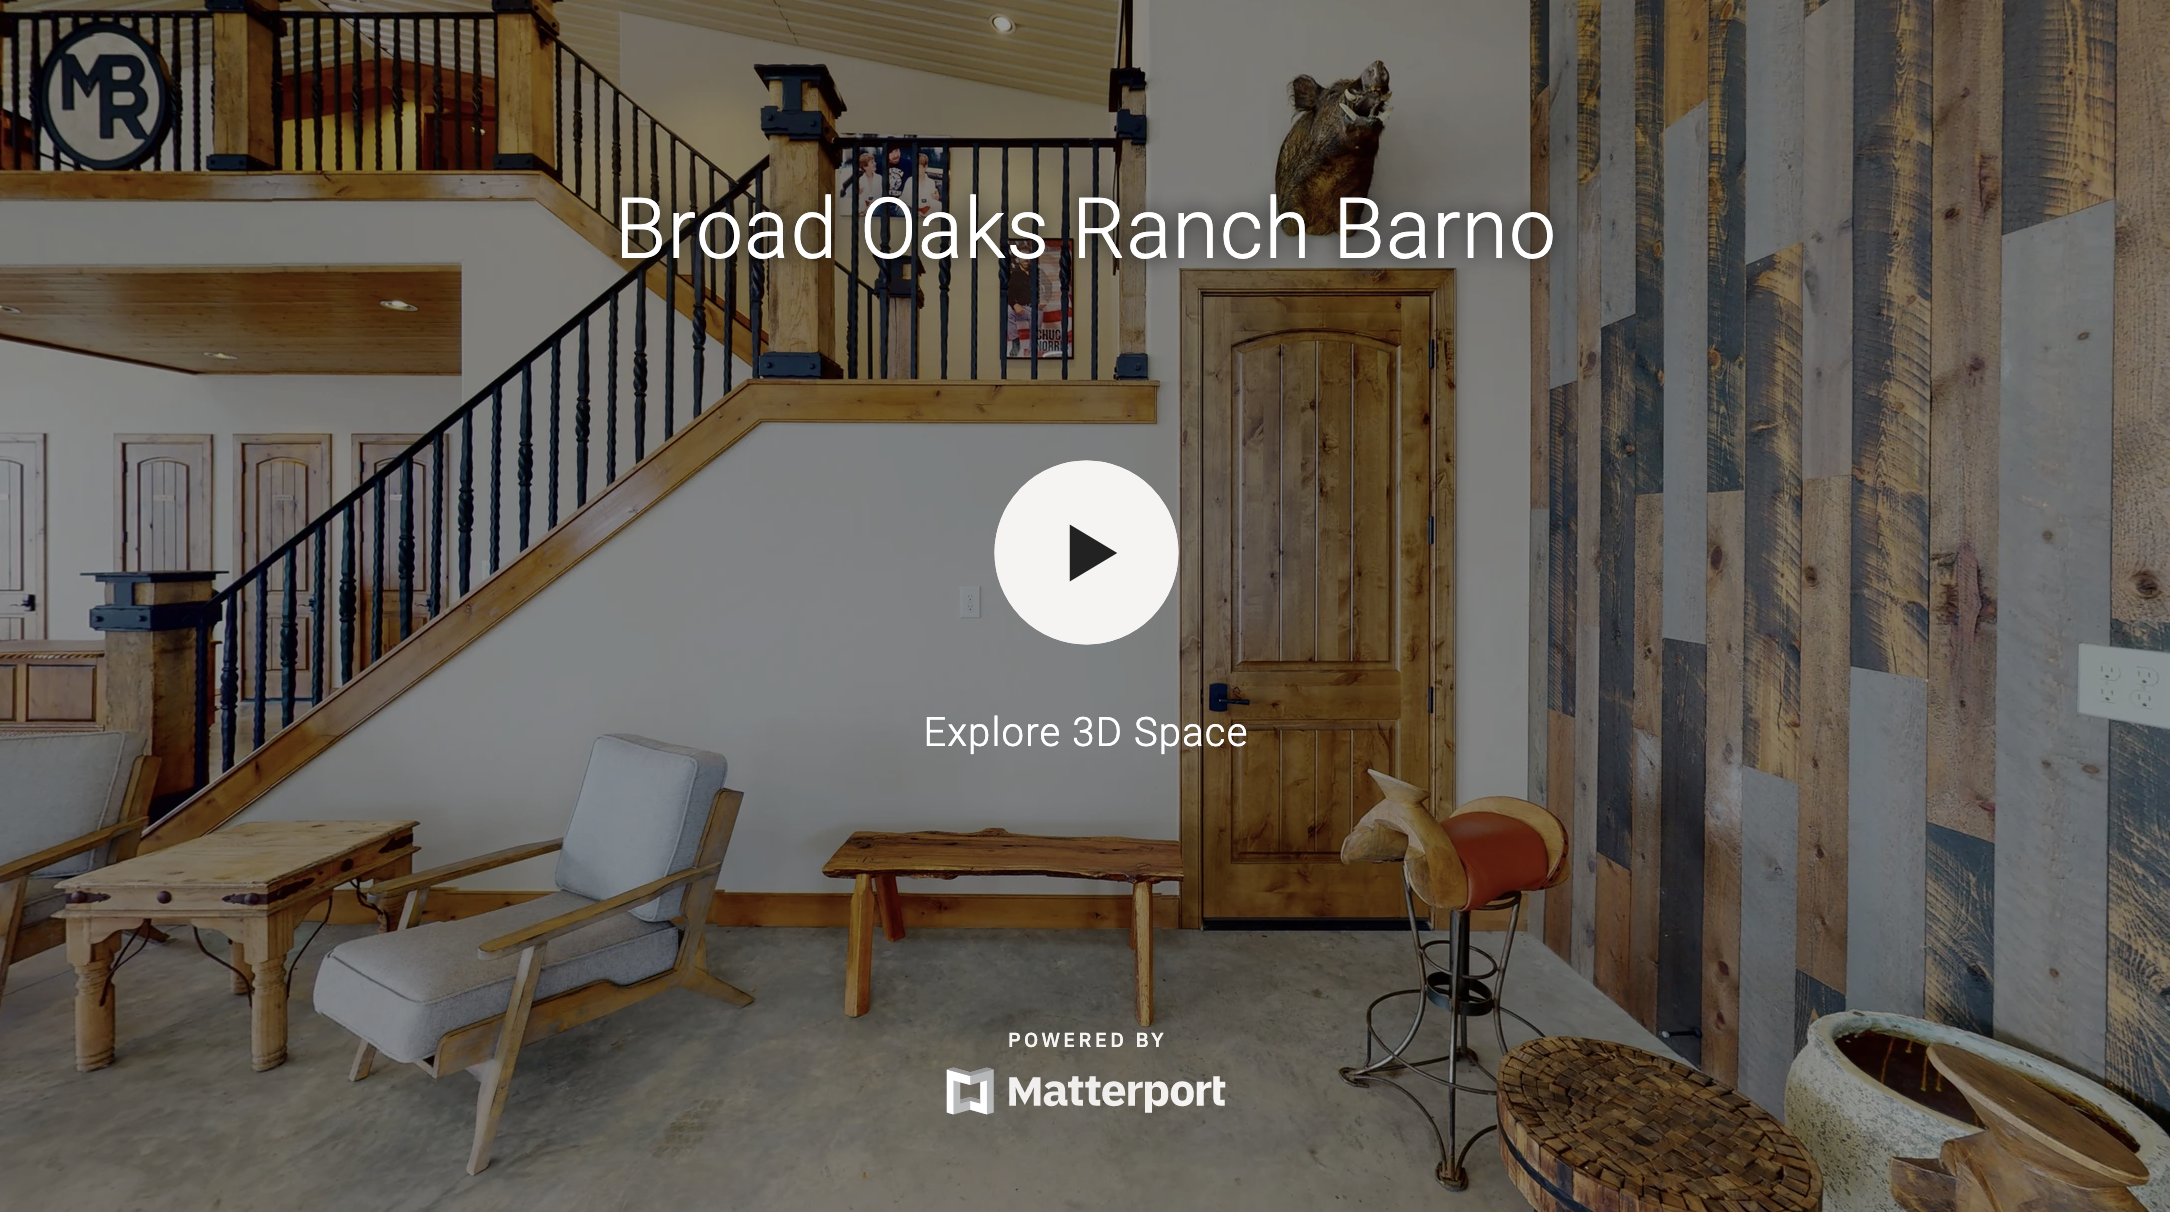 Broad Oaks Ranch